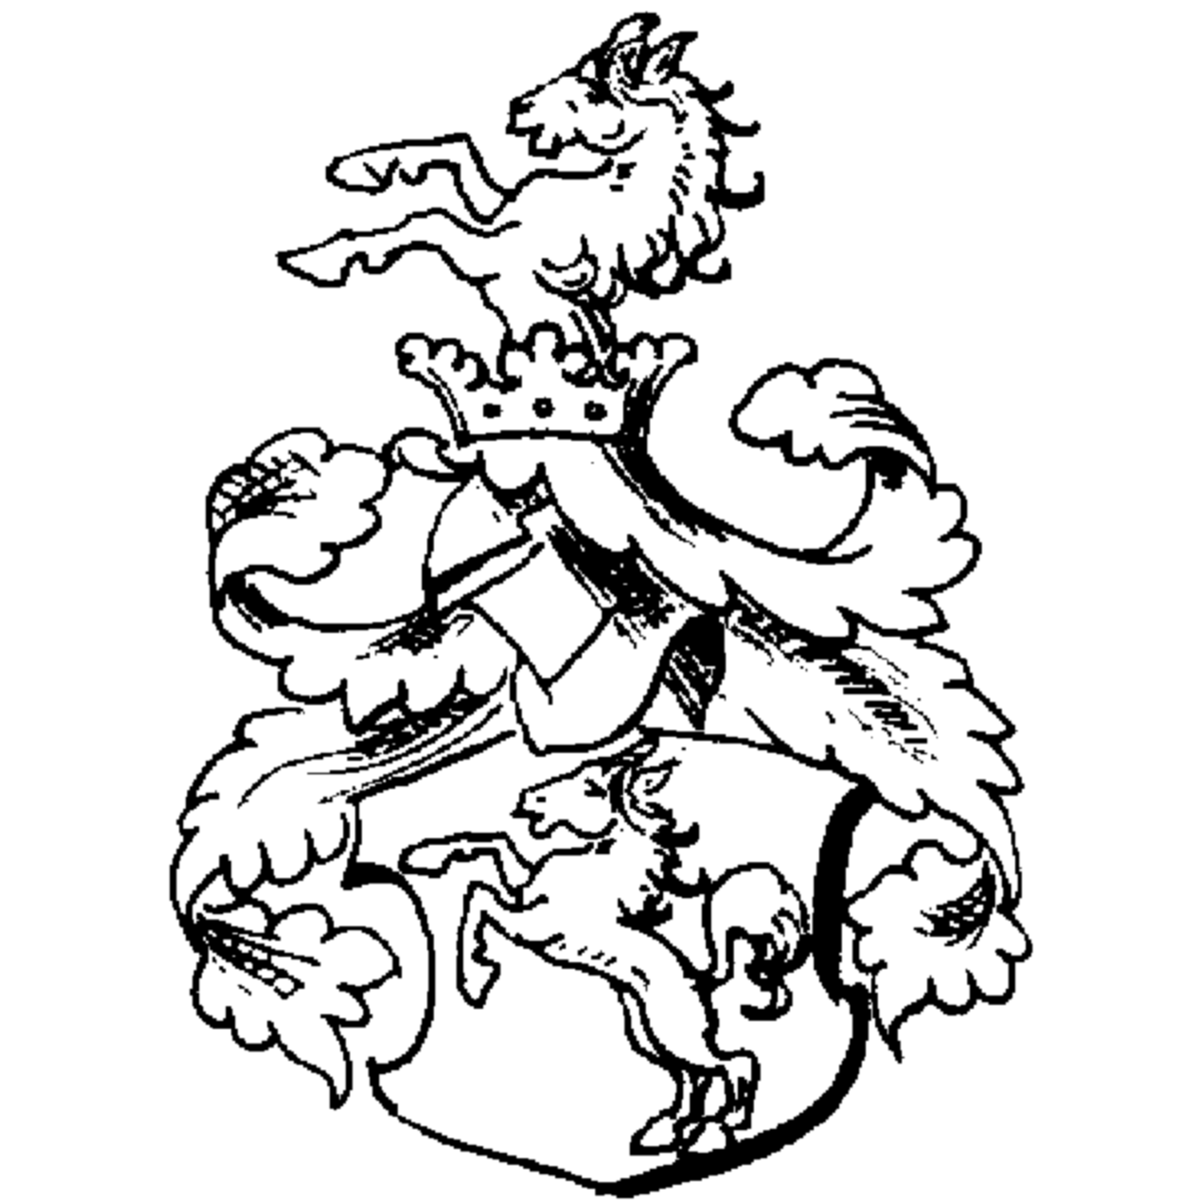 Wappen der Familie Fulda